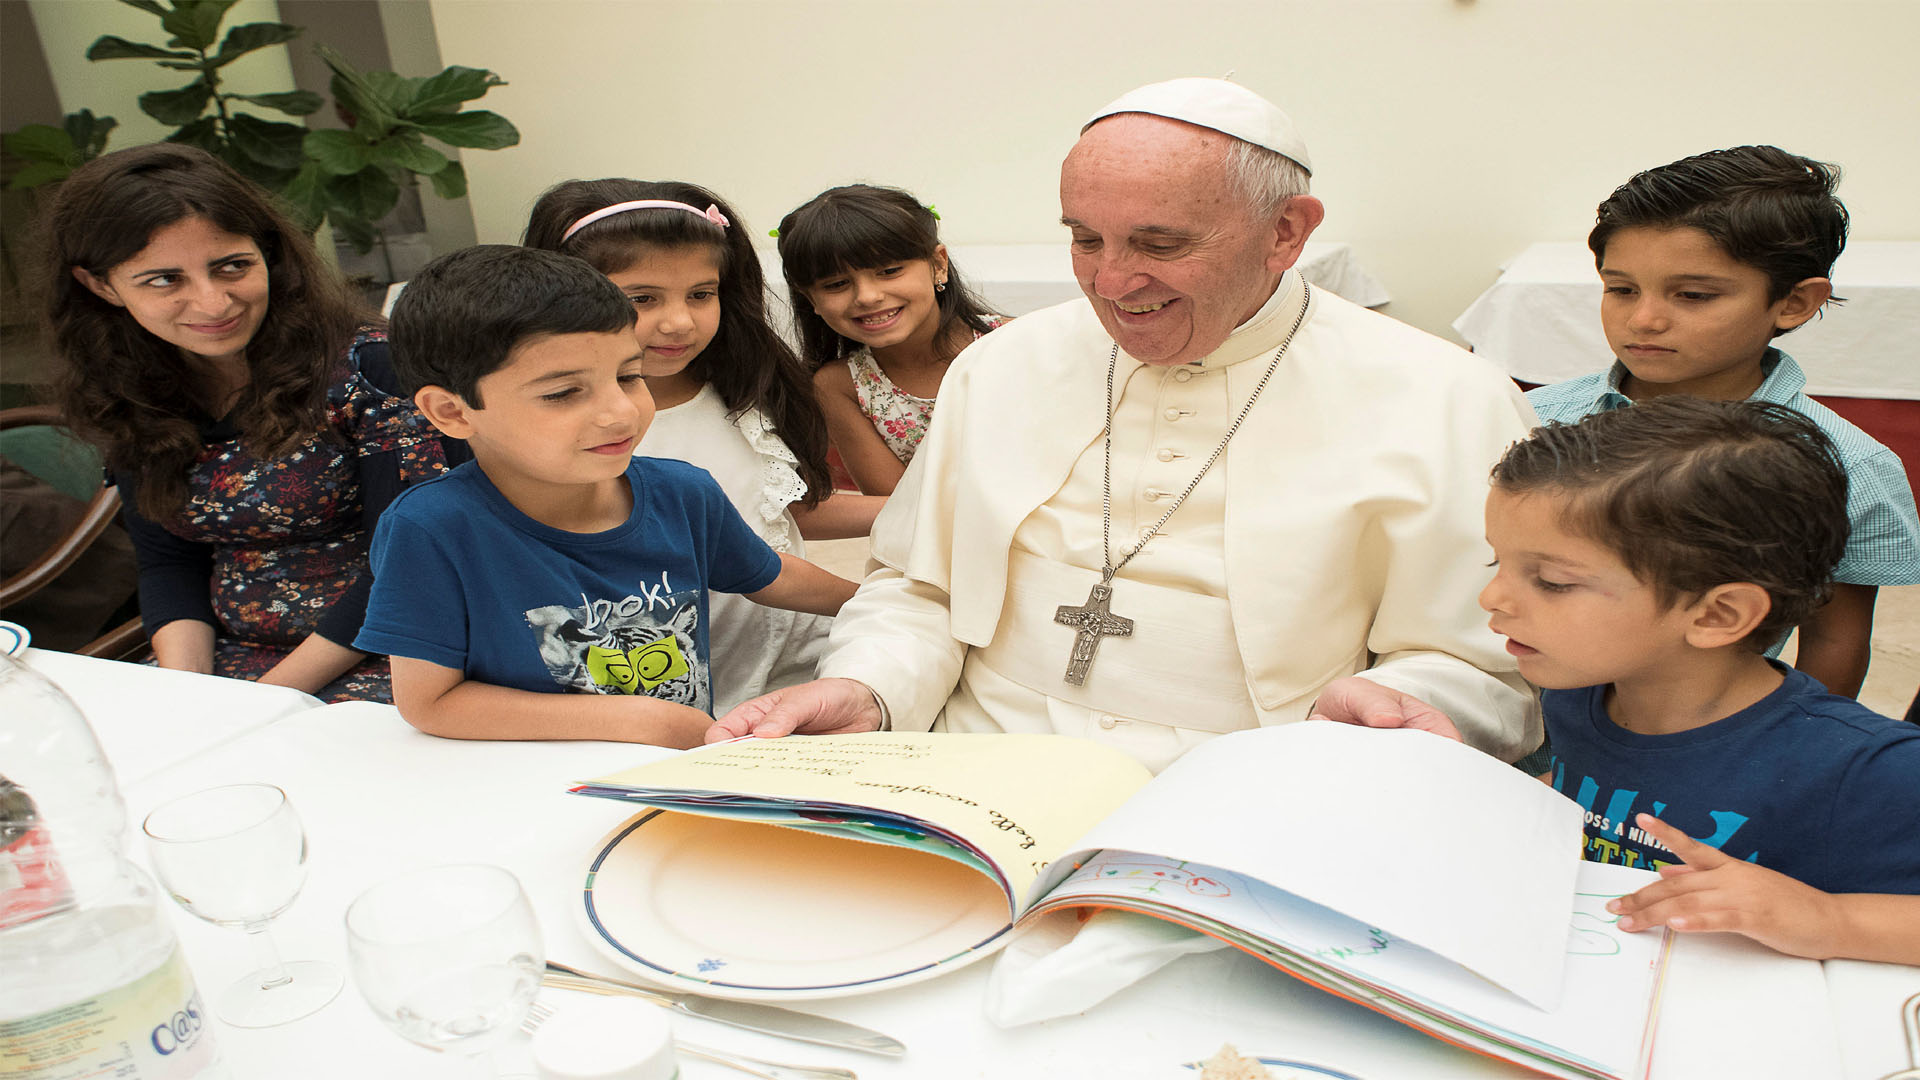 El máximo líder de la Iglesia católica, se reunió con un grupo de sirios quienes están viviendo en el Vaticano